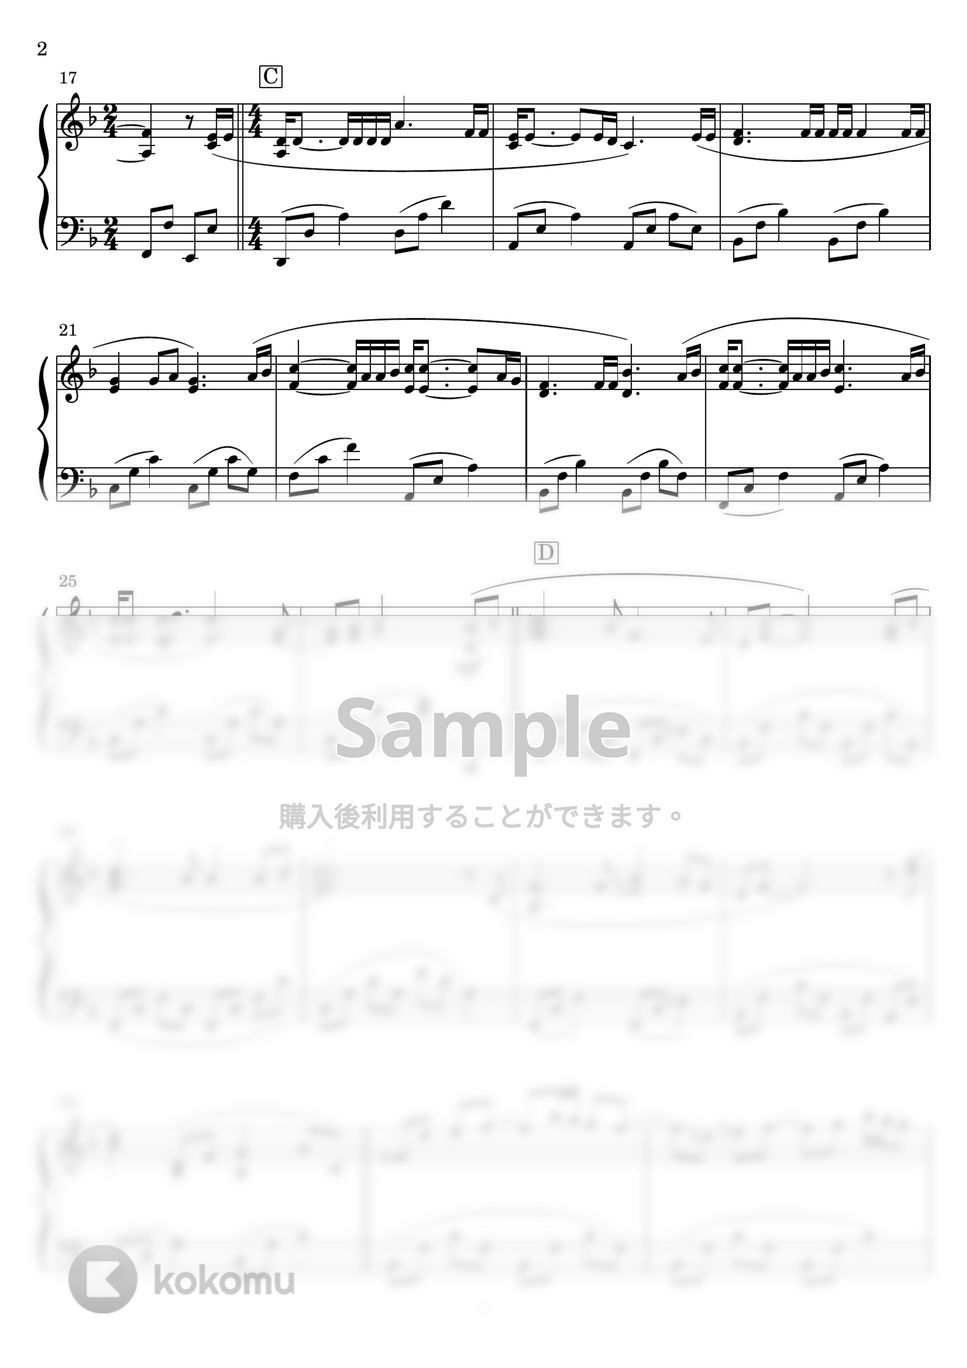 海援隊 - 贈る言葉 (ピアノソロ) by Miz